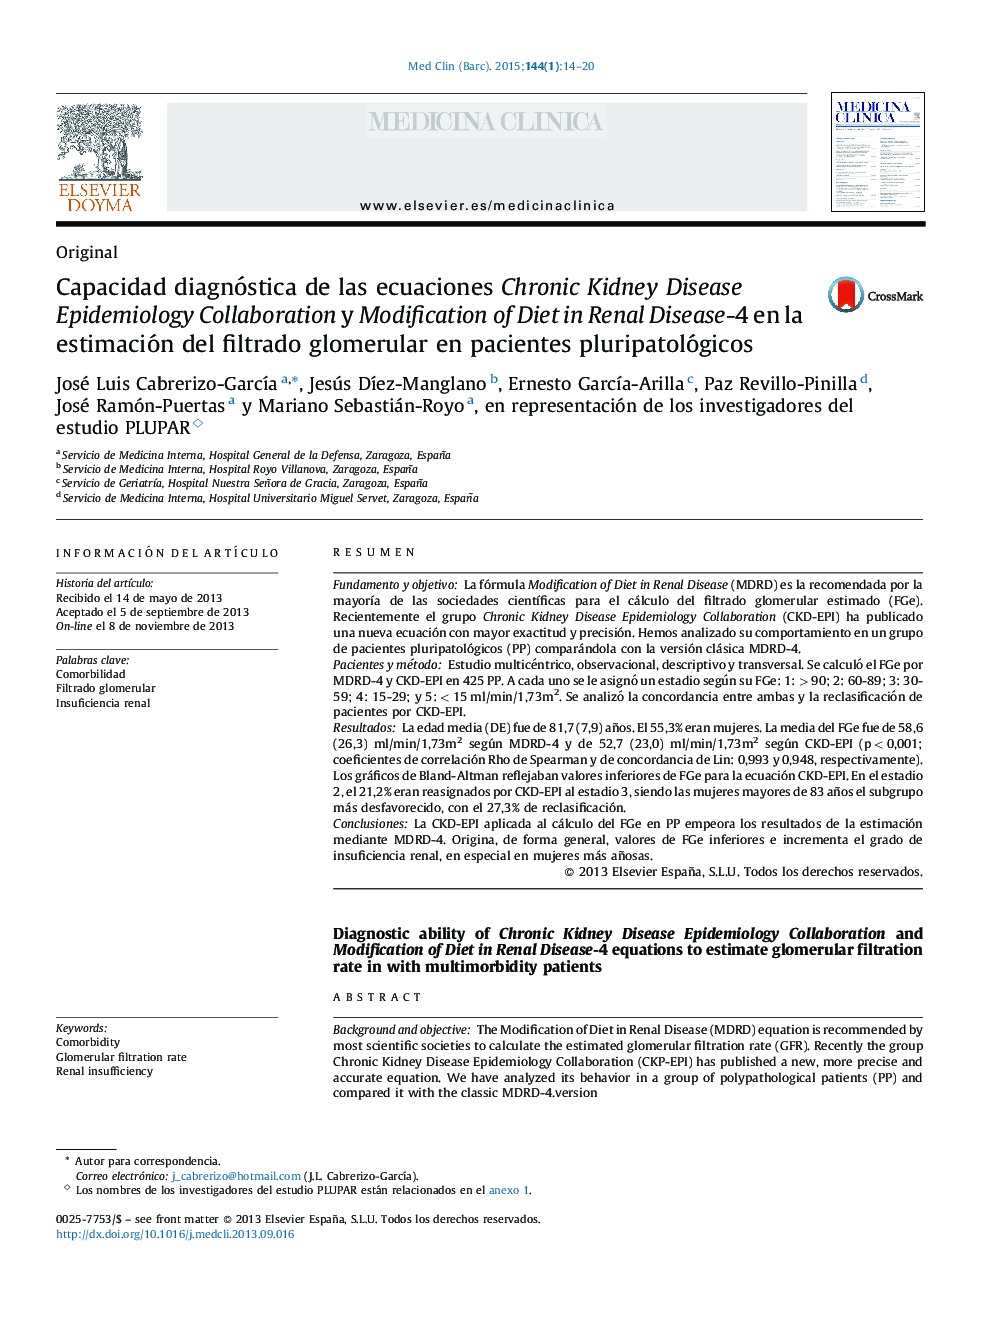 Capacidad diagnóstica de las ecuaciones Chronic Kidney Disease Epidemiology Collaboration y Modification of Diet in Renal Disease-4 en la estimación del filtrado glomerular en pacientes pluripatológicos